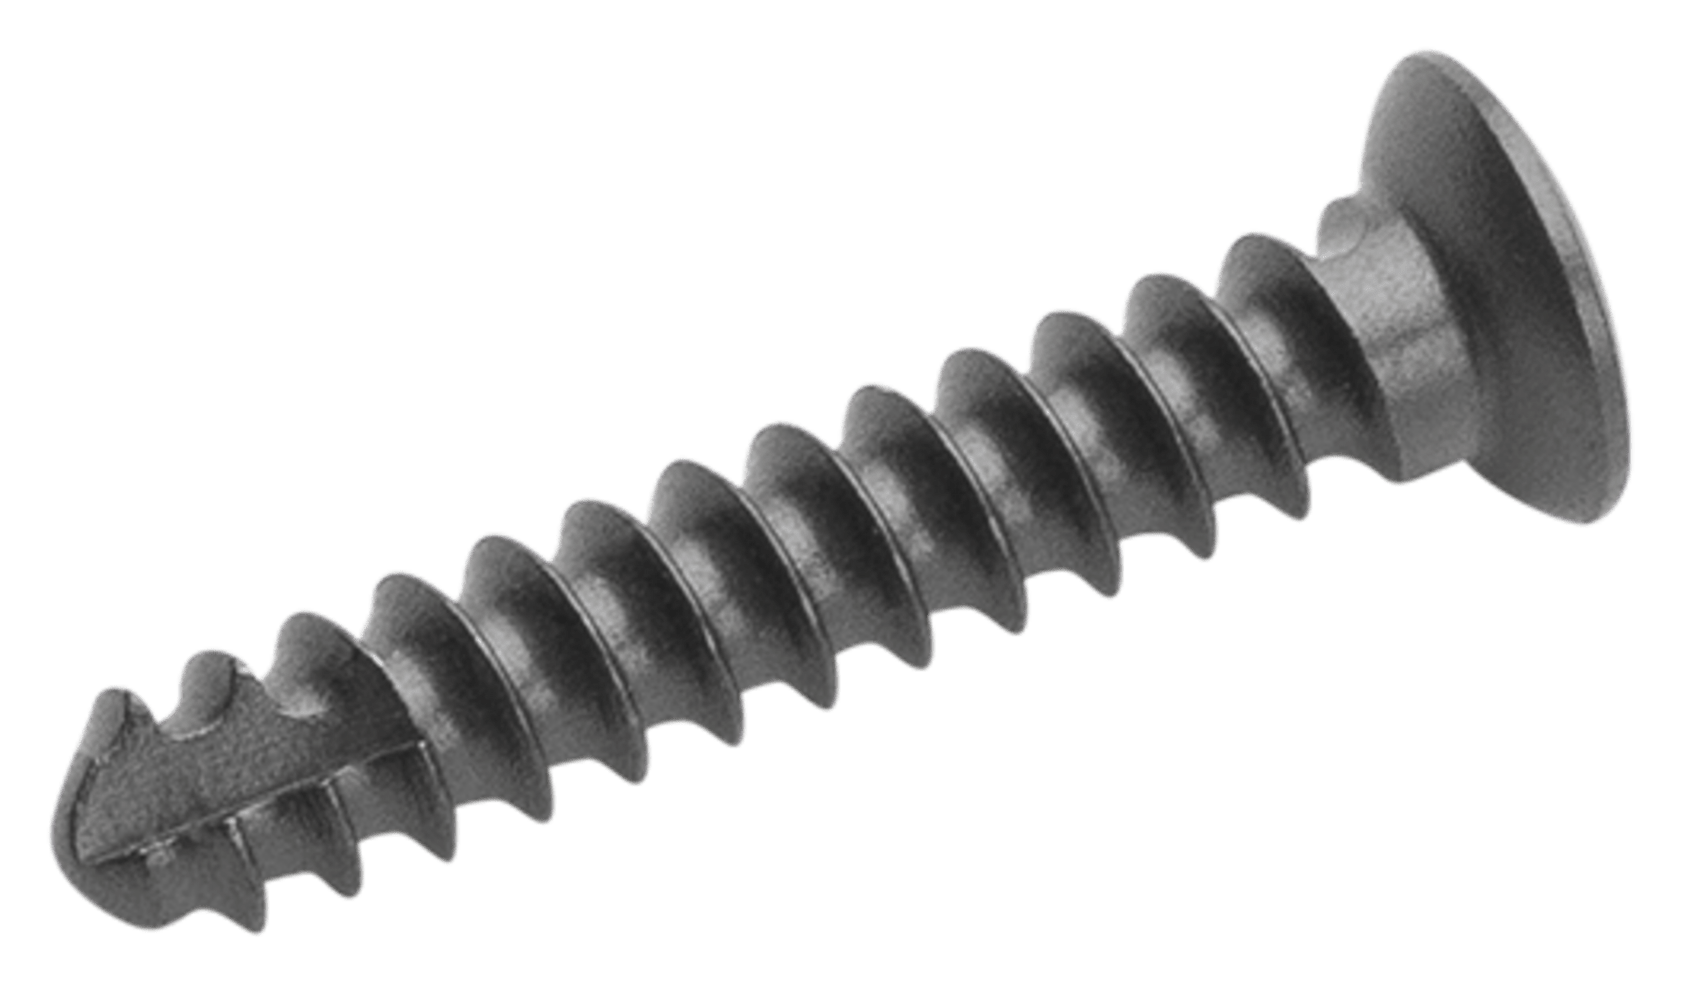 Cortical Screw, 1.4 mm x 7 mm